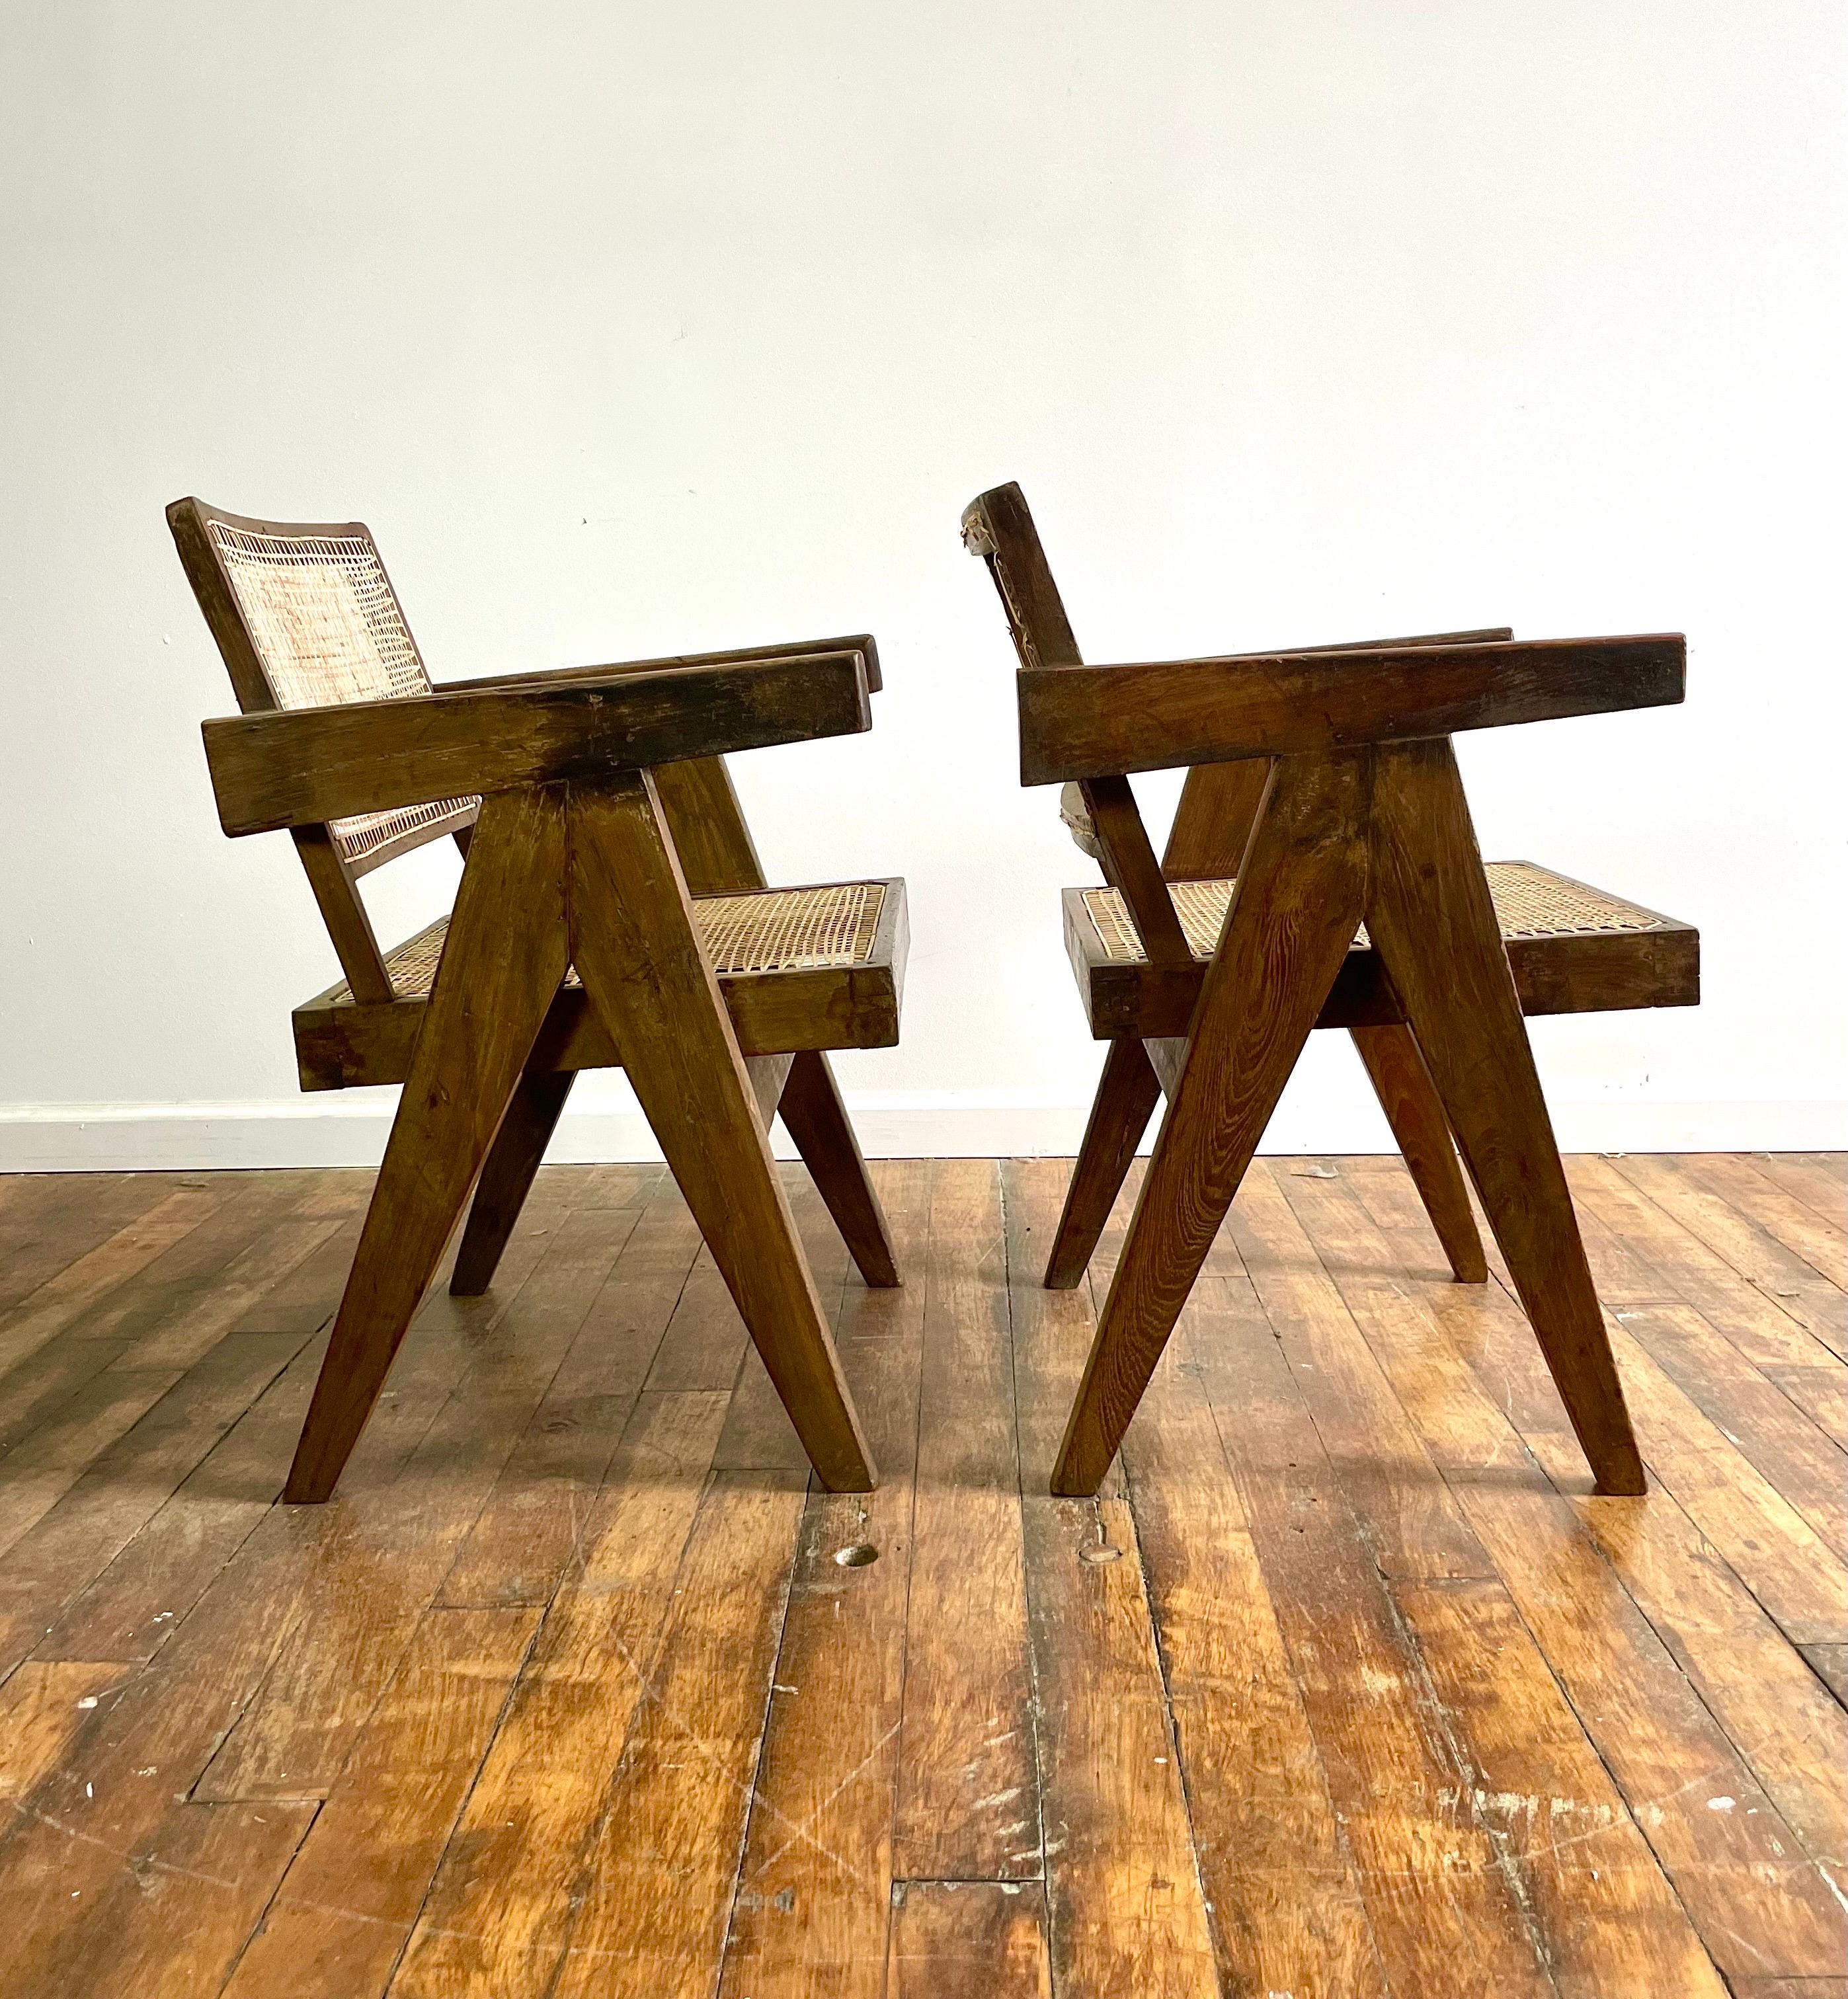 Une paire époustouflante de chaises de bureau Pierre Jeanneret de la première heure. Il y a tant de chaises Jeanneret sur le marché que celles-ci sont exceptionnelles. 

Premièrement : l'épaisseur du bois est parfaite et conforme à certains des